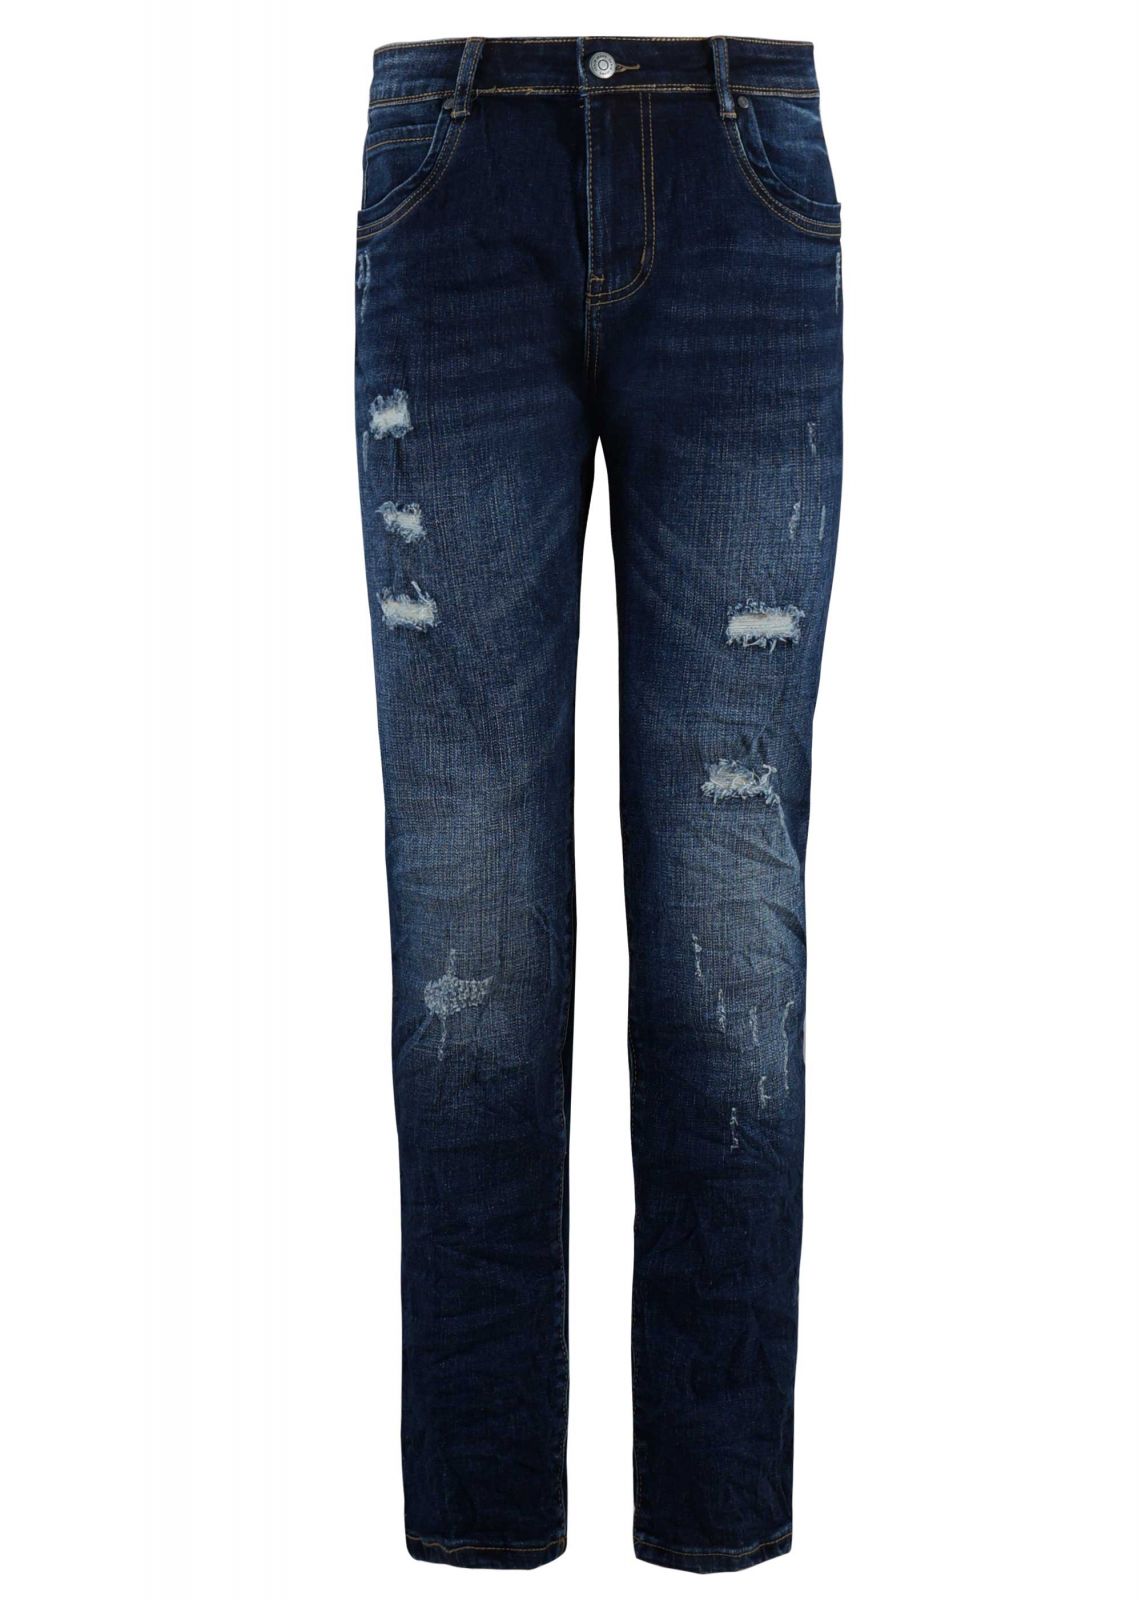 Ανδρικό παντελόνι jean ελαφρώς ξεβαμμένο σκισίματα.Denim collection